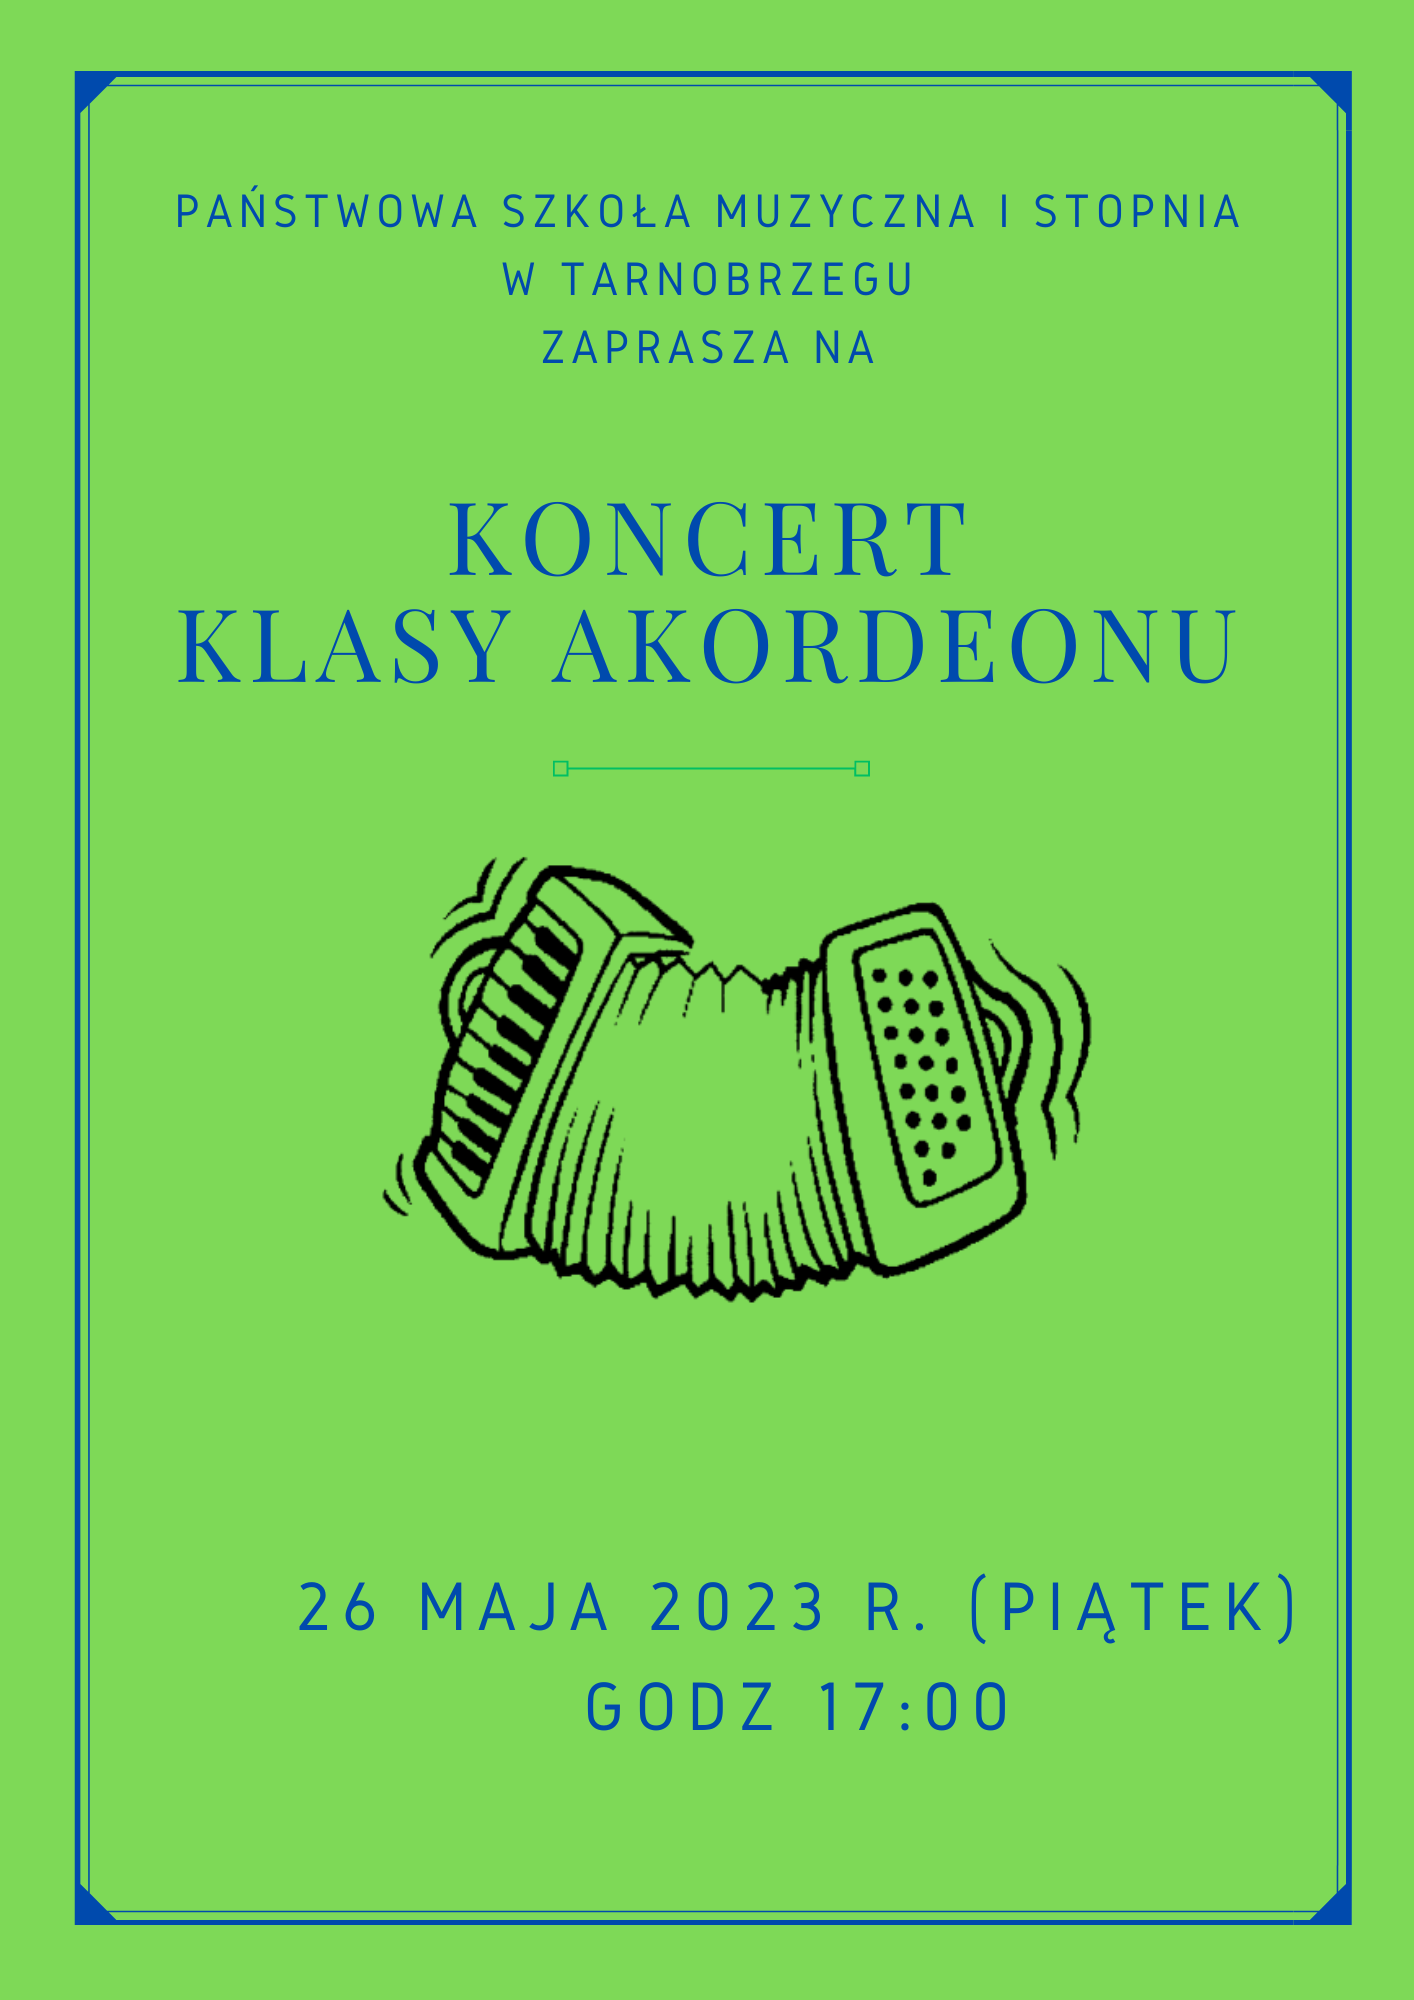 Plakat koncertu akordeonowego na zielonym tle niebieskie napisy. Po środku czarny akordeon